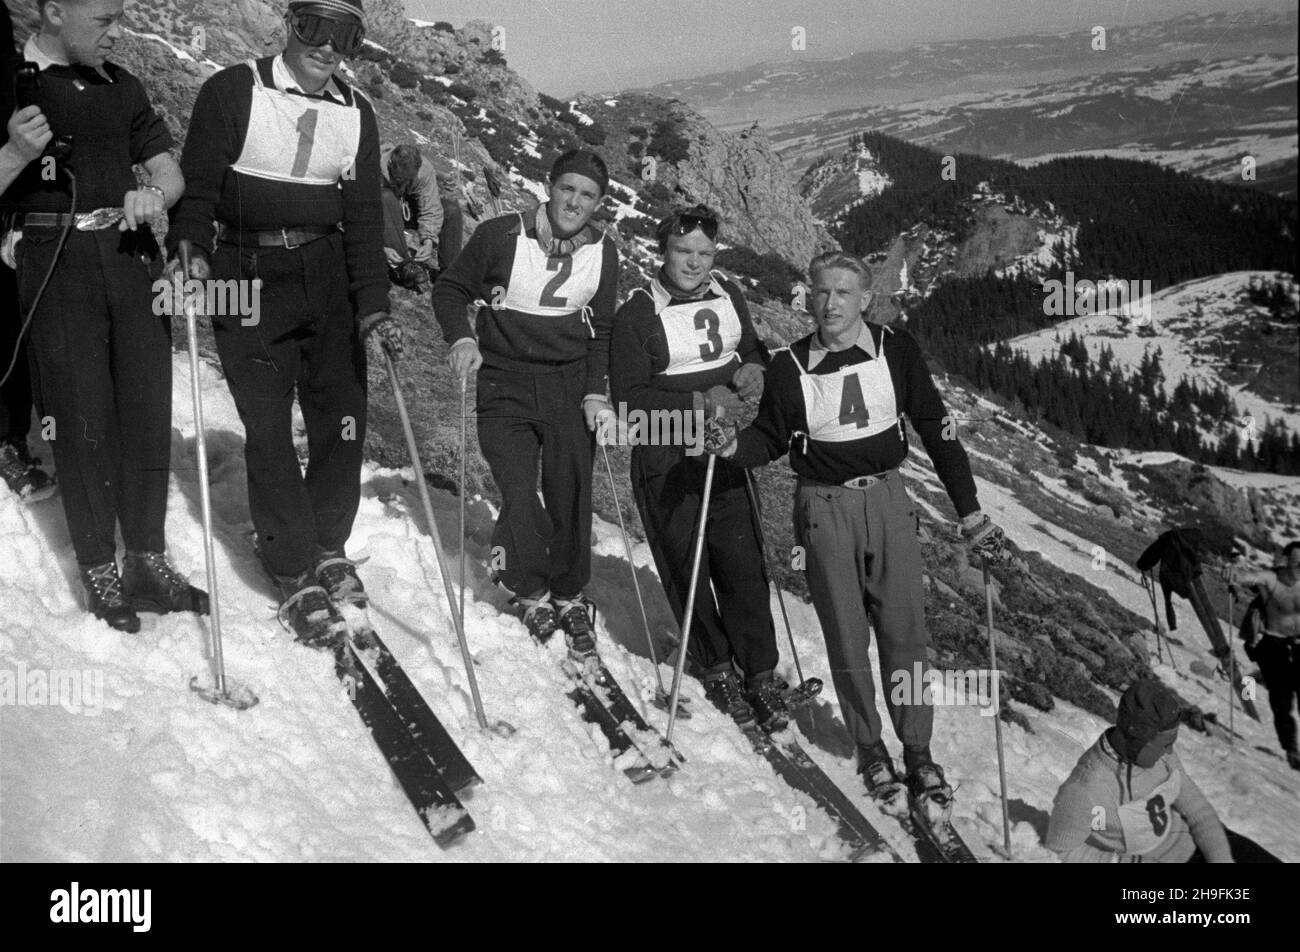 Karpacz, 1948-02-21. W dniach 19-23 lutego odbywa³y siê XXIII Mistrzostwa Narciarskie Polski. Slalom mê¿czyzn wygra³ Józef Marusarz (SNPTT Zakopane). Nz. zawodnicy na starcie do slalomu. pw  PAP      Karpacz, Feb. 21, 1948. The 23rd Poland's Skiing Championship was held on February 19-23. Jozef Marusarz (SNPTT Zakopane) won men's slalom. Pictured: slalom contenders at the start.  pw  PAP Stock Photo